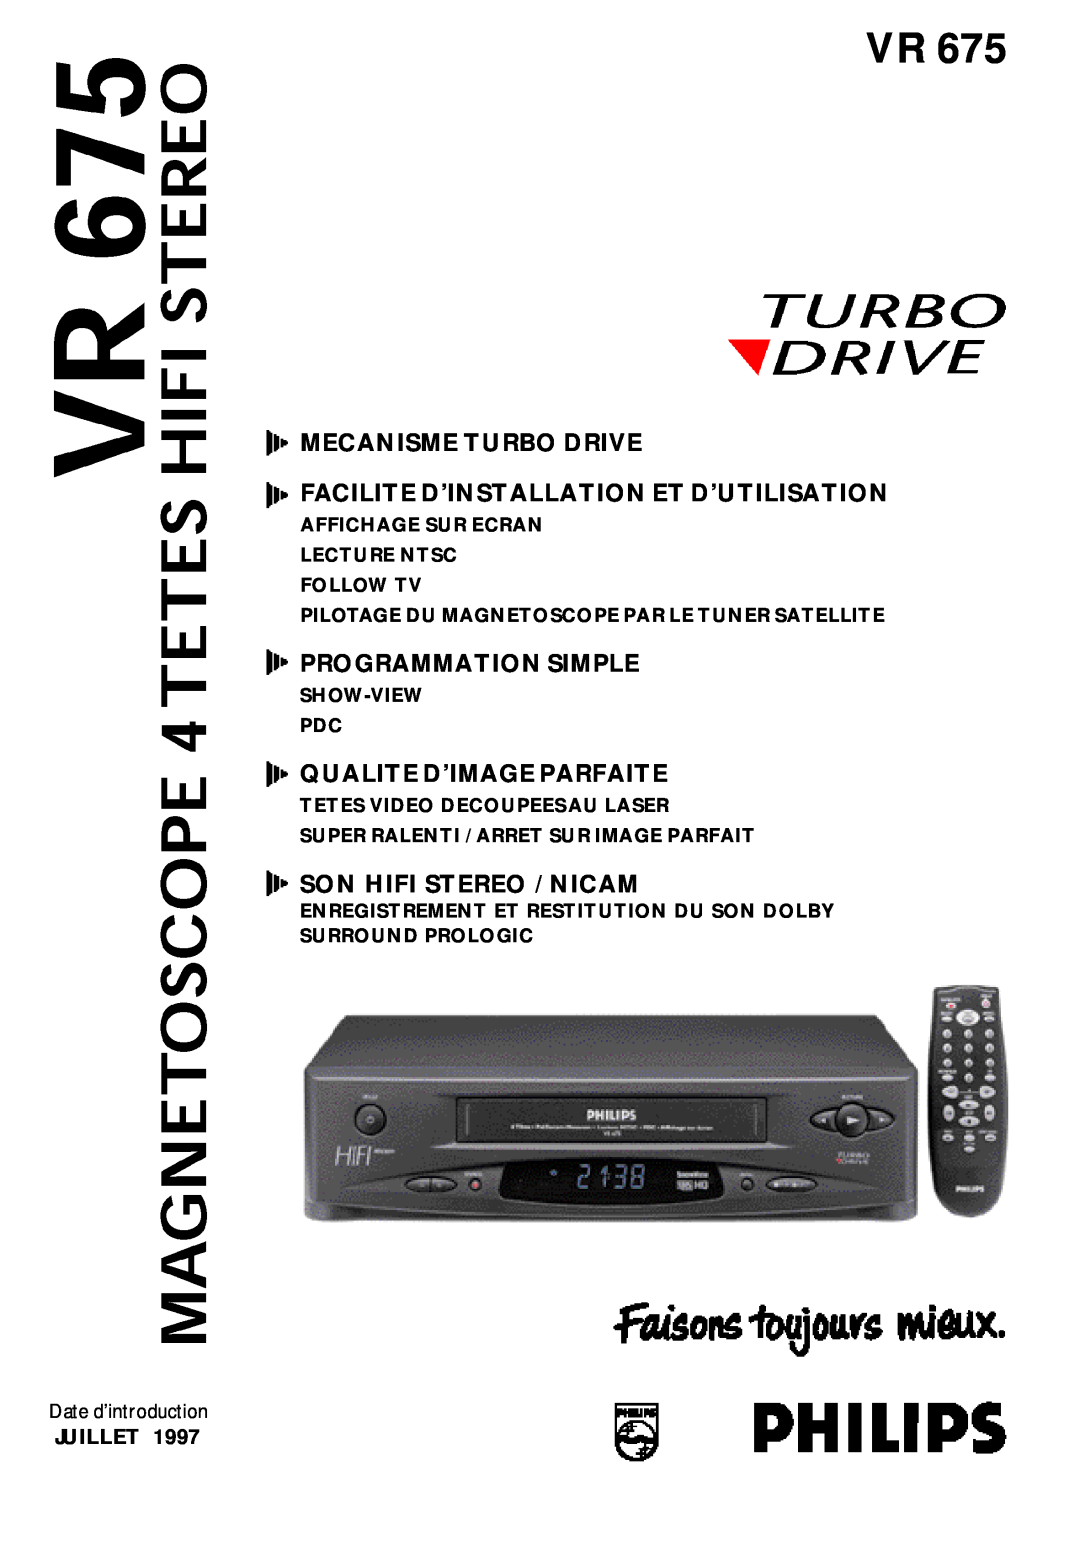 Philips VR 675 manual Date d’introduction, Affichage Sur Ecran Lecture Ntsc Follow Tv, Show-View Pdc, Programmation Simple 